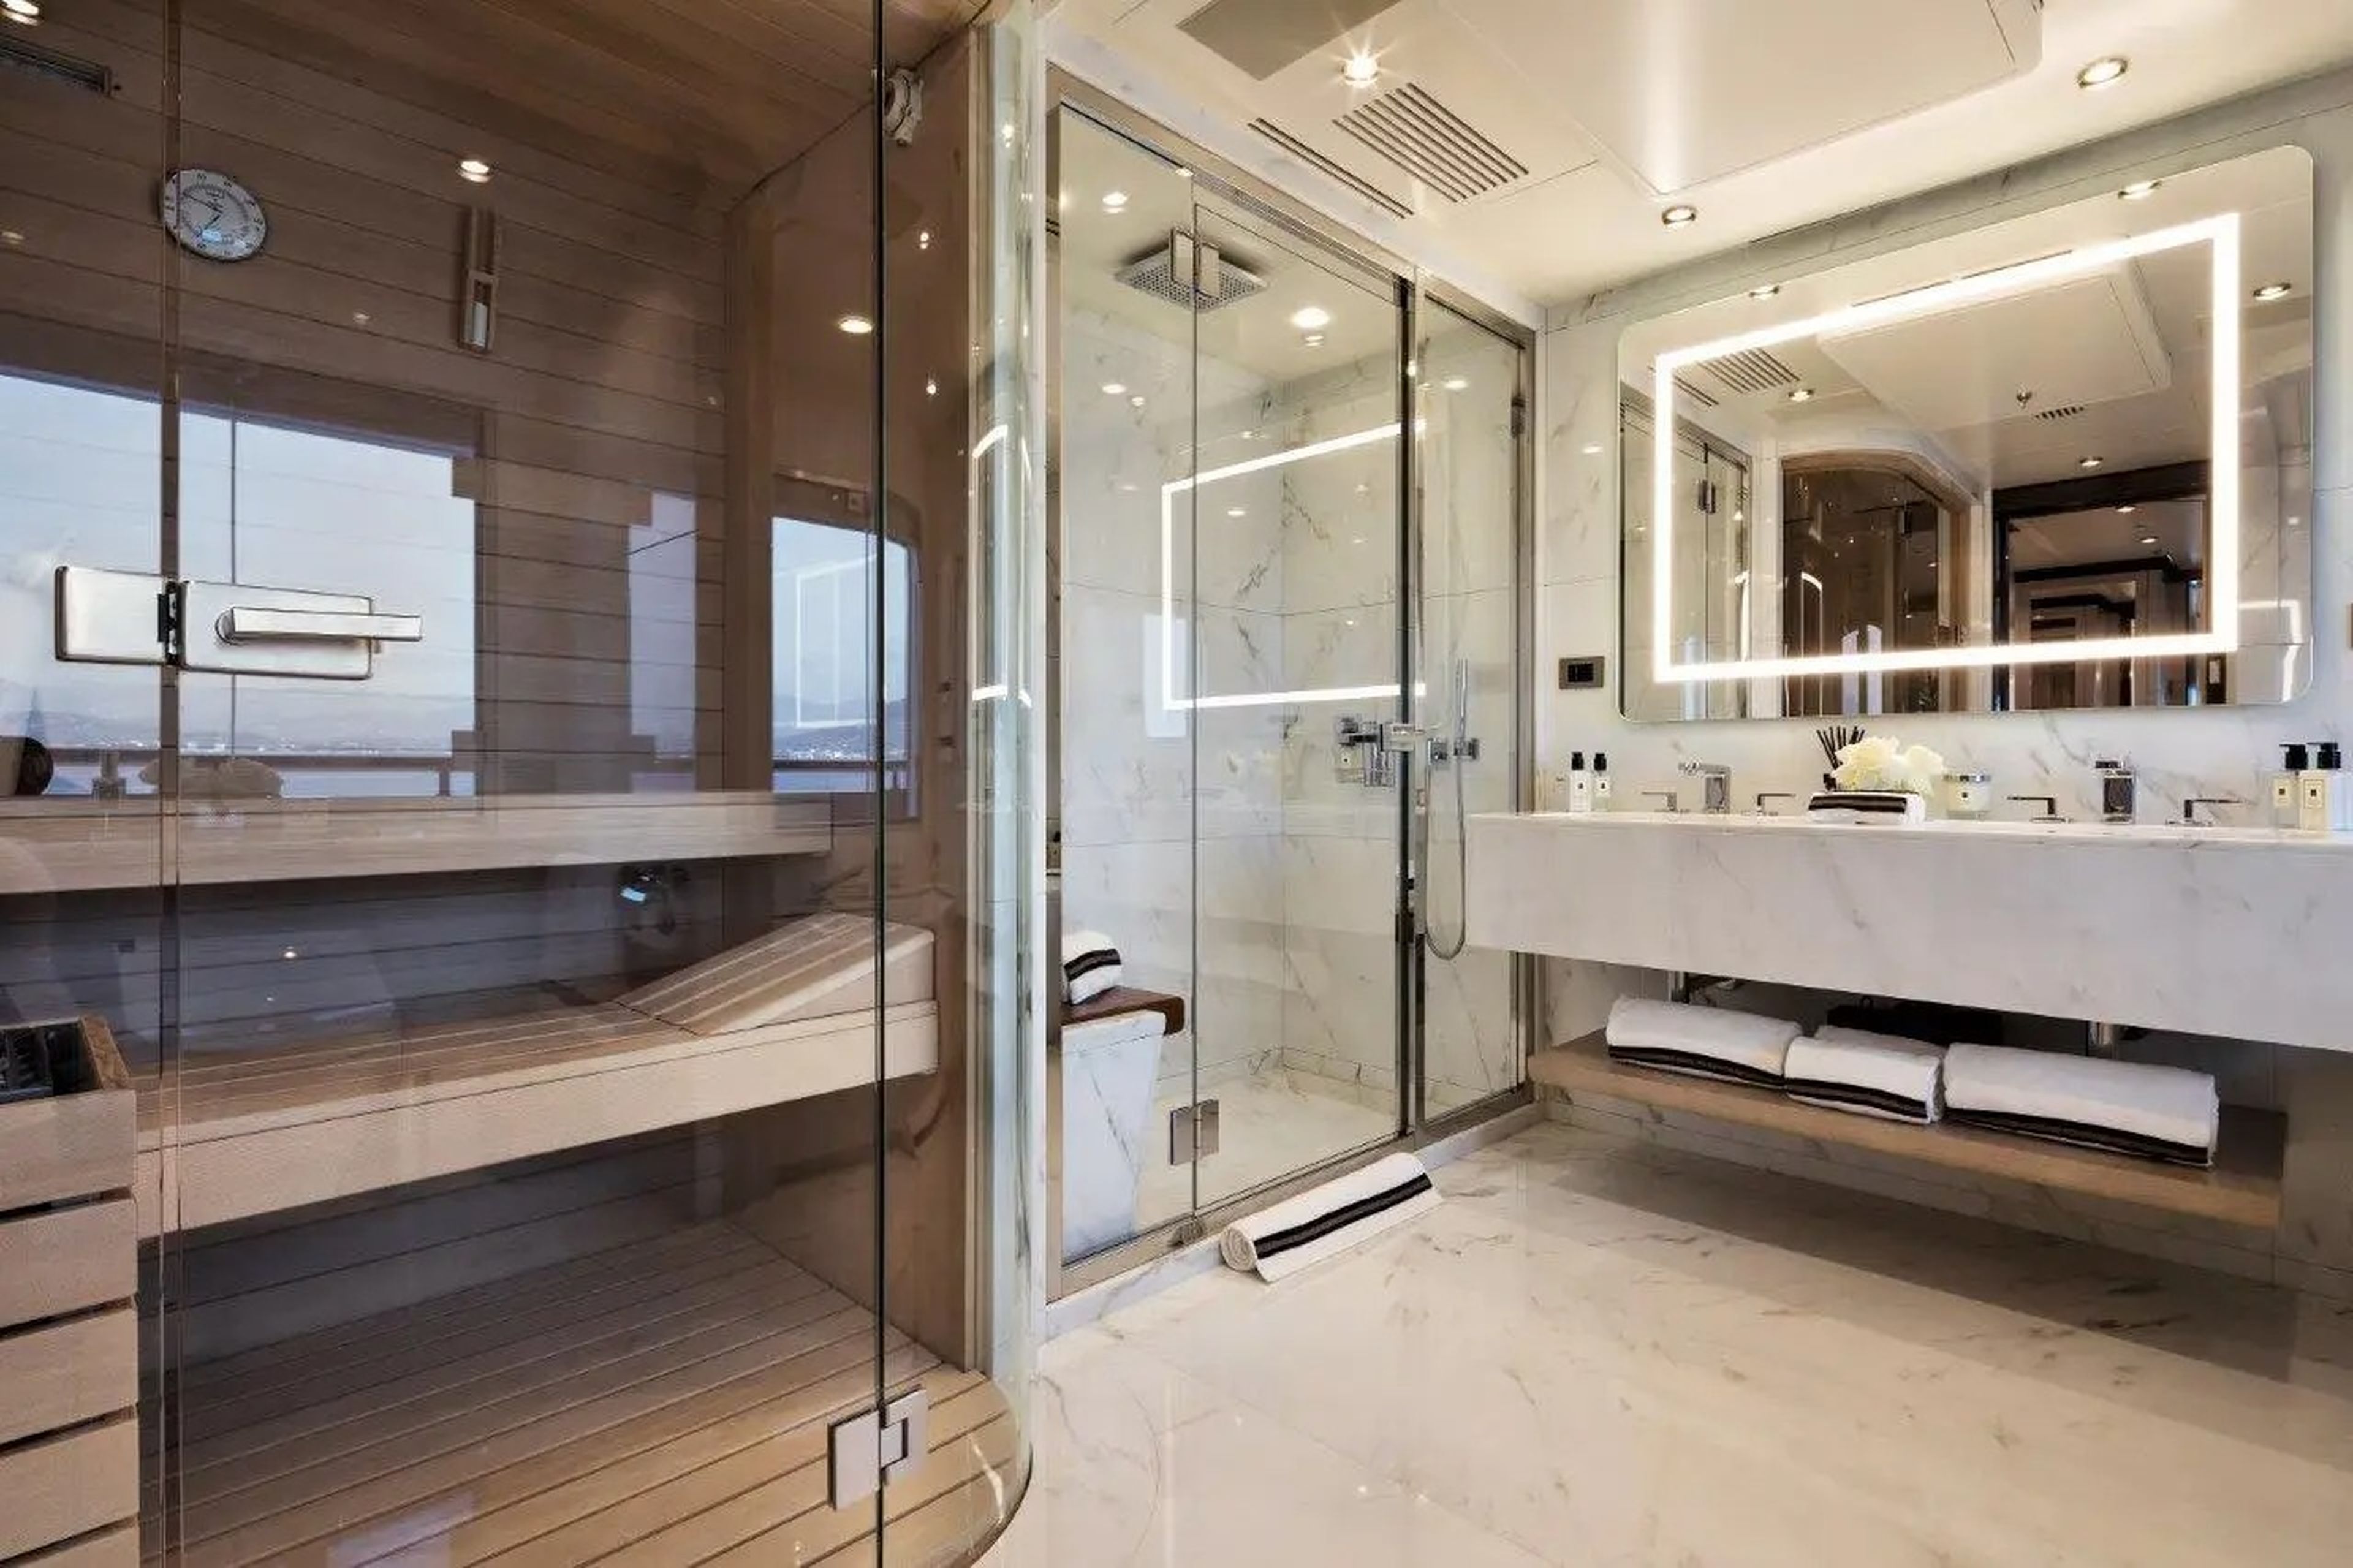 El amplio cuarto de baño del Triumph, cuyo alquiler cuesta 650.000 dólares semanales, incluye un baño turco.